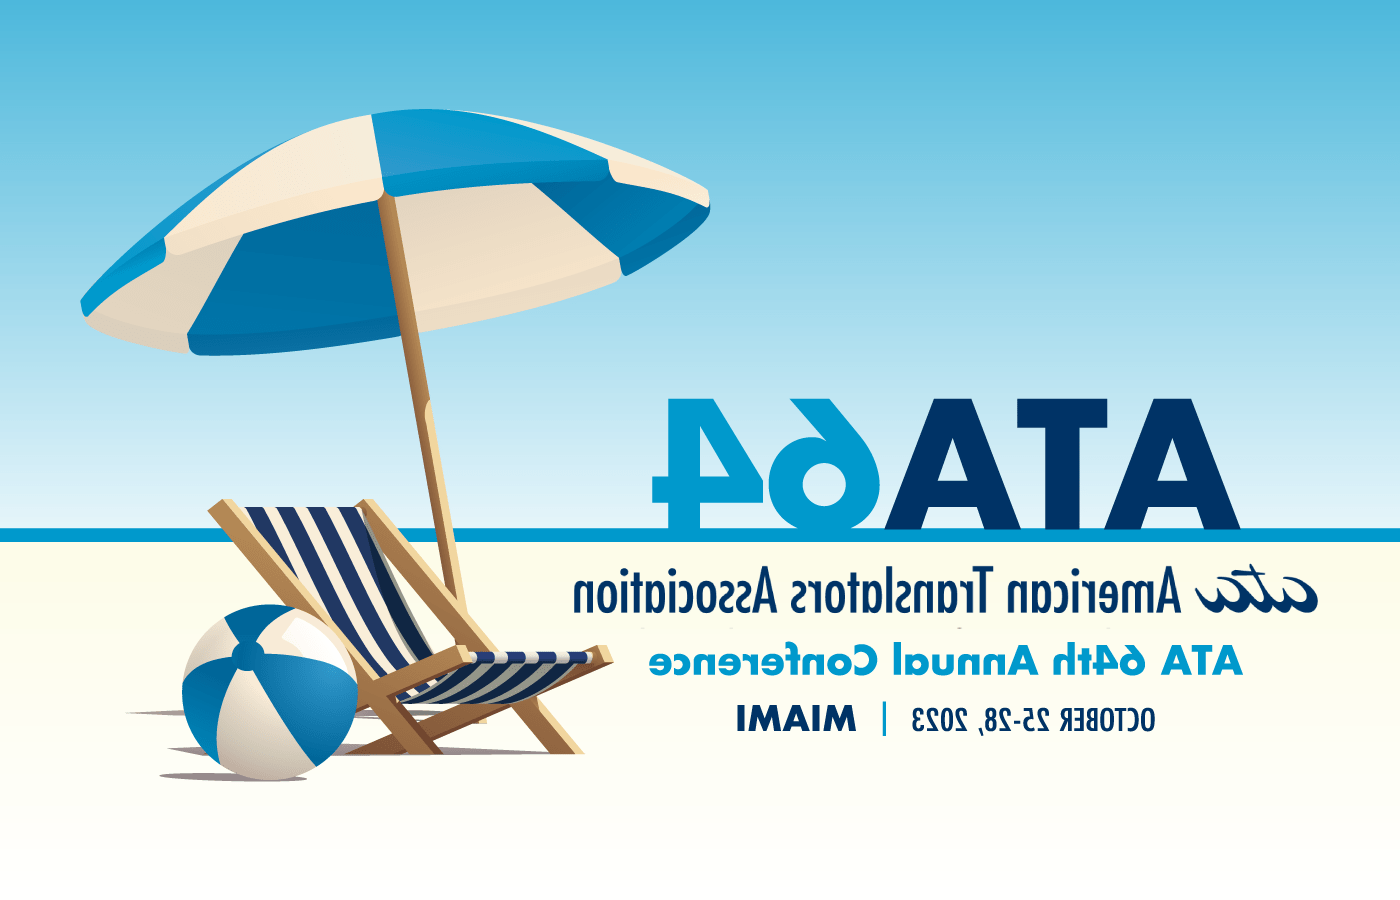 ATA 64th Annual Conference (ATA64)